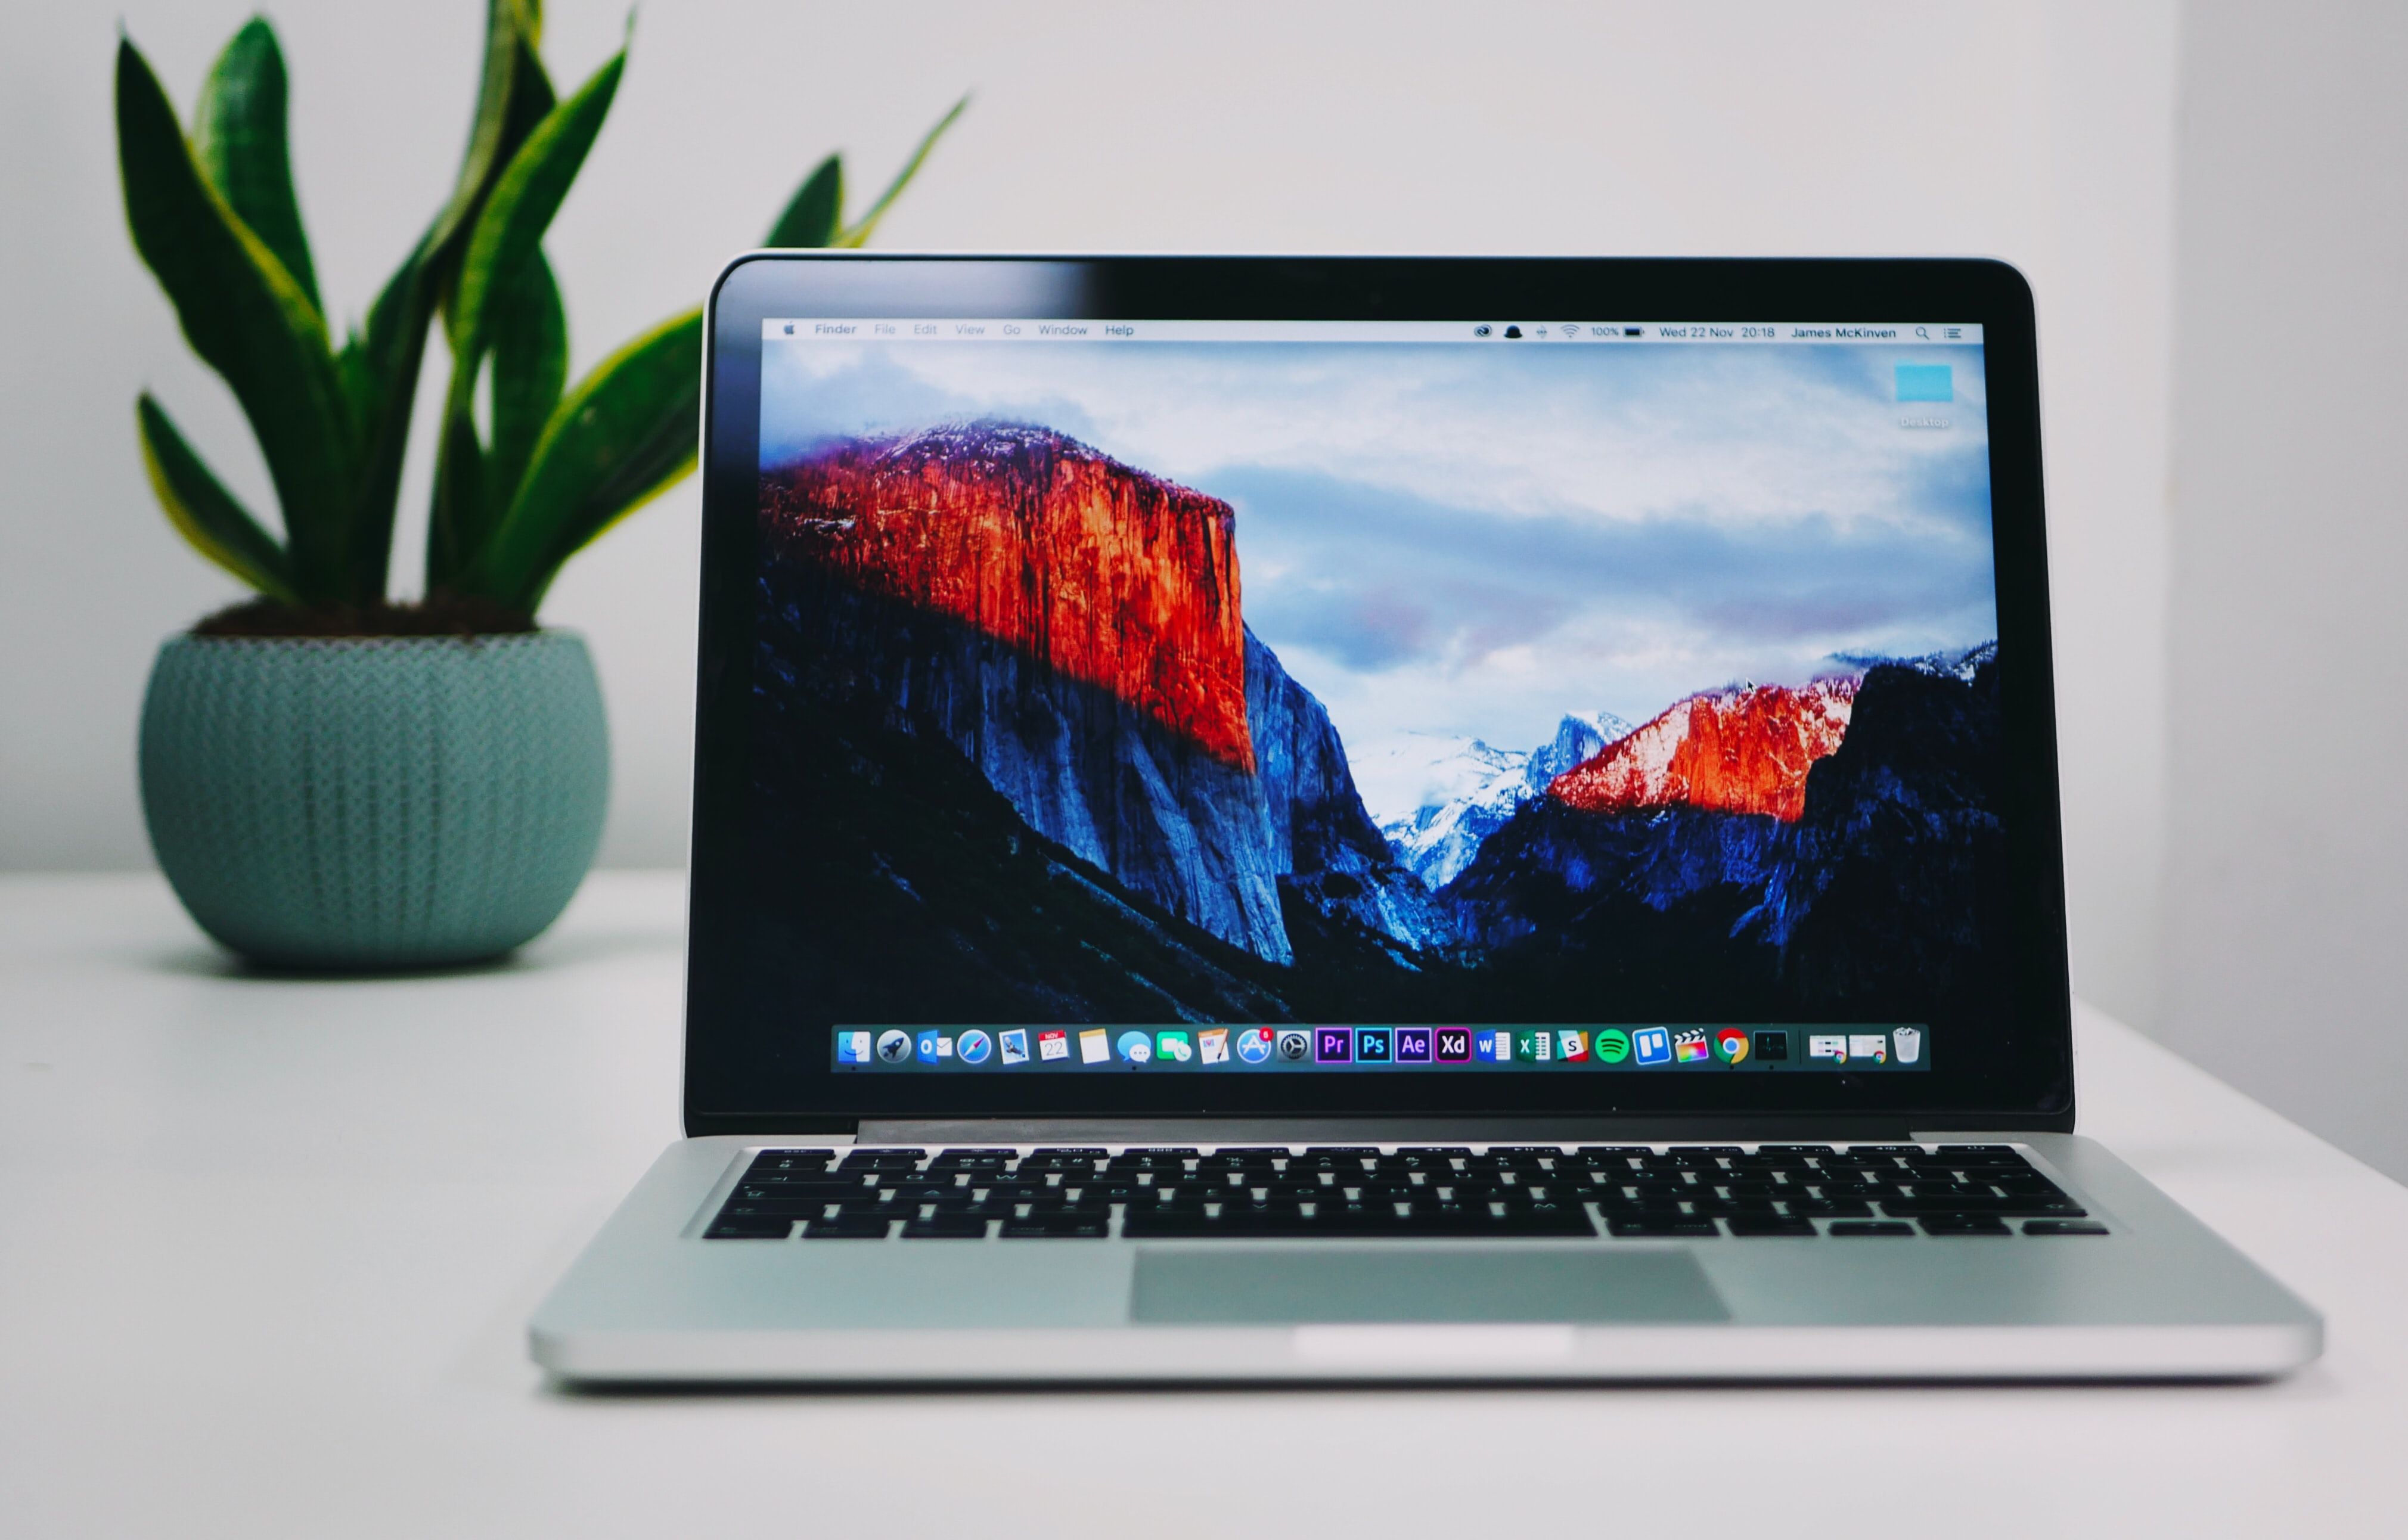 Photo of Macbook on top of desk